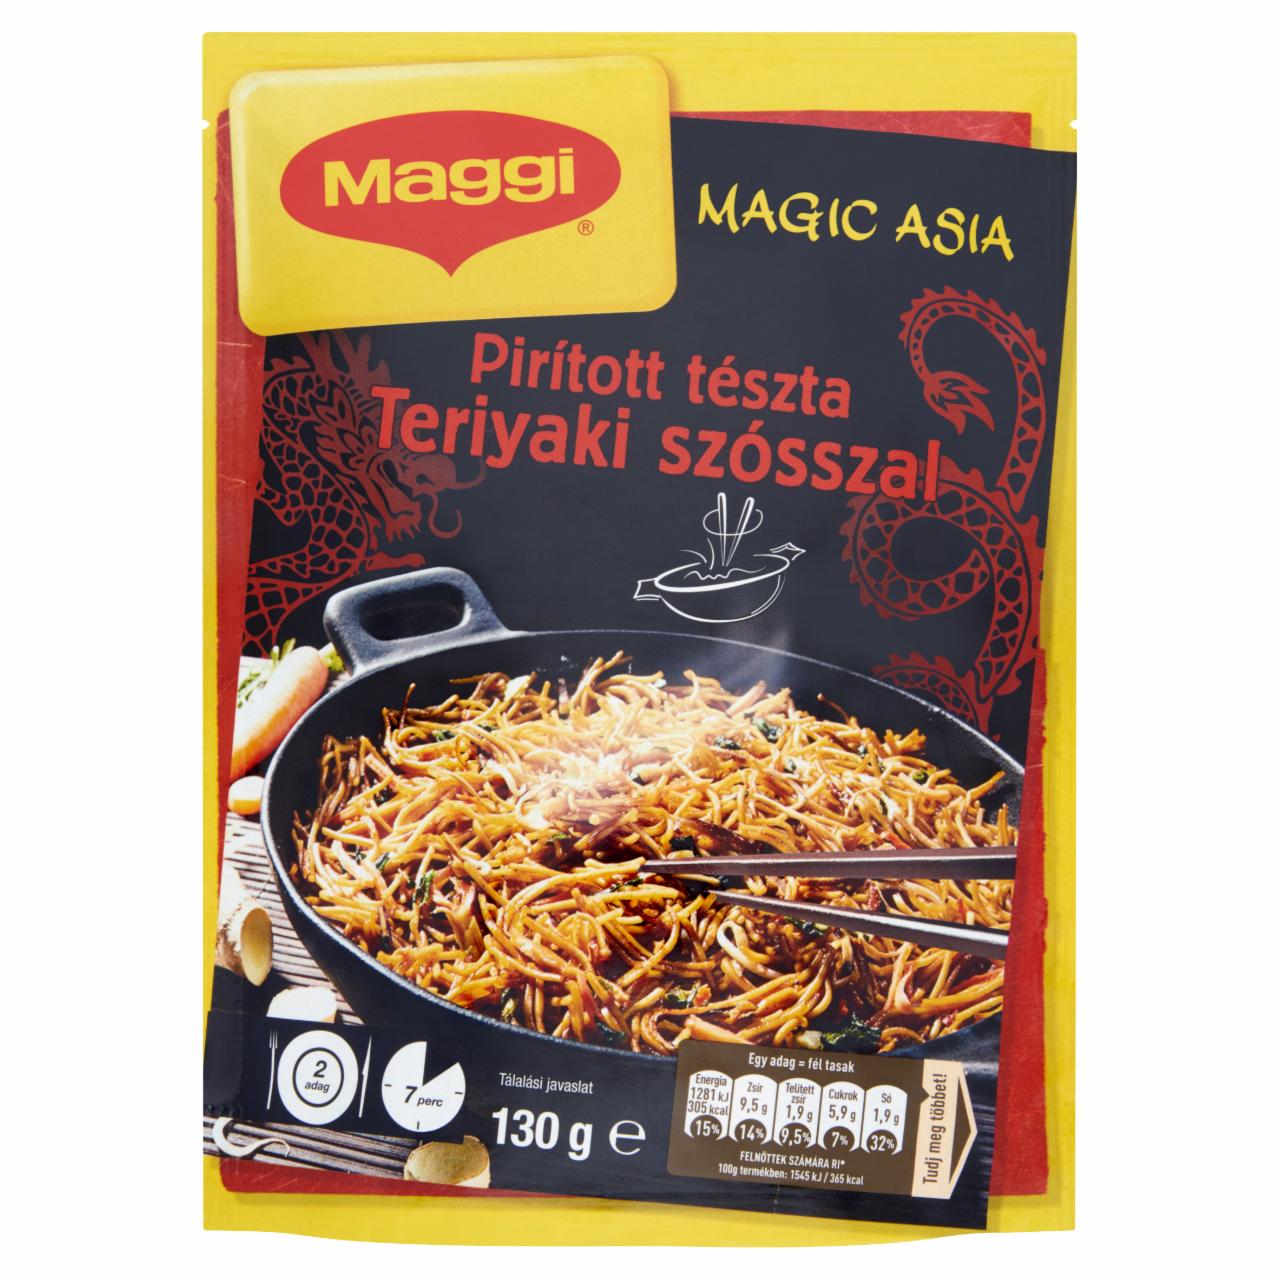 Képek - Maggi Magic Asia Pirított tészta teriyaki szósszal 130 g